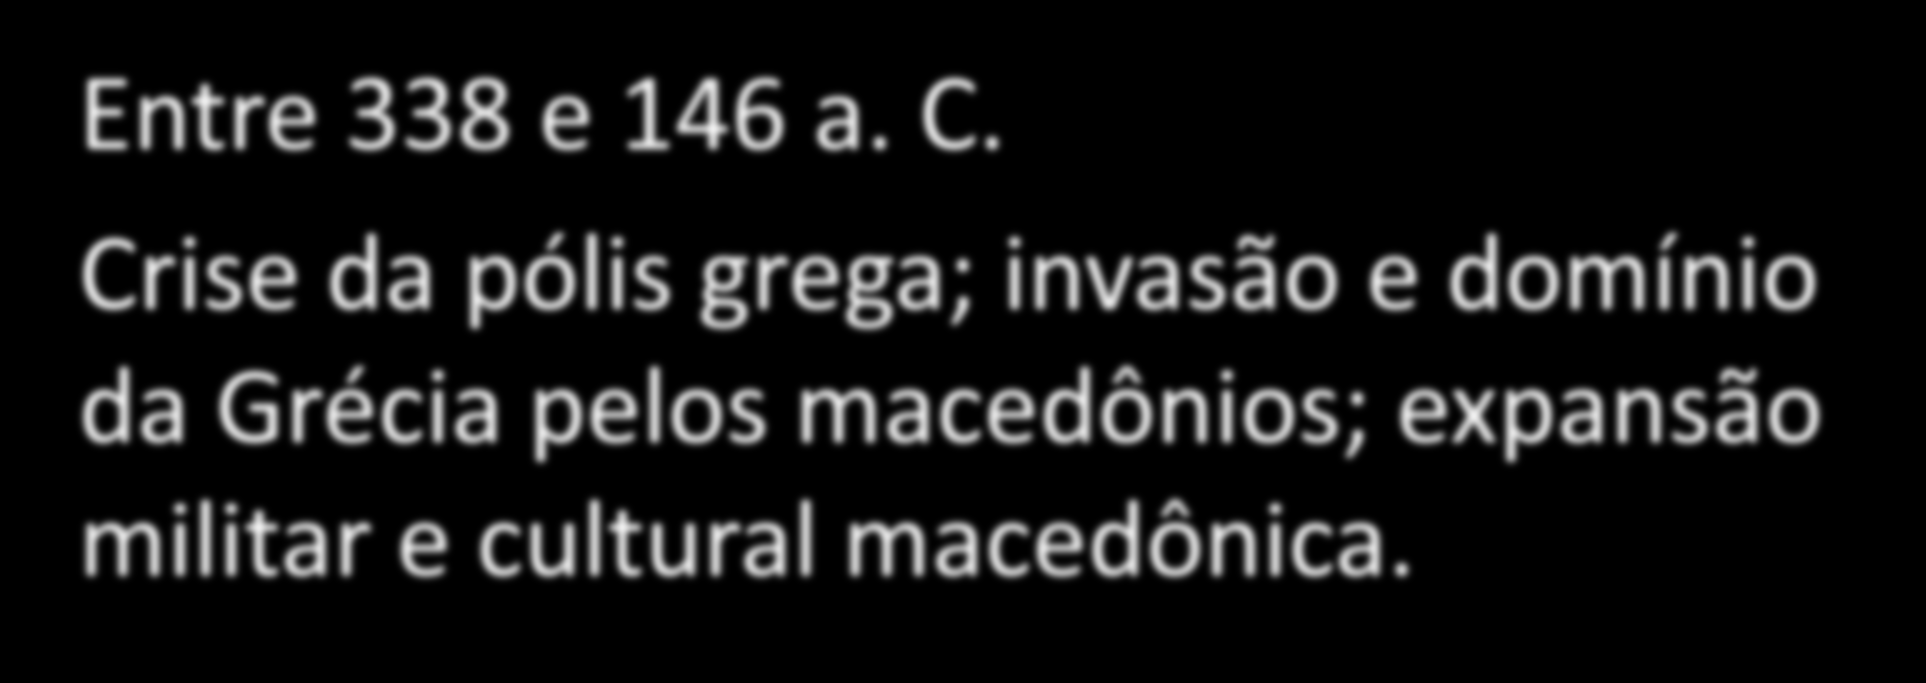 PERÍODO HELENÍSTICO Entre 338 e 146 a. C.